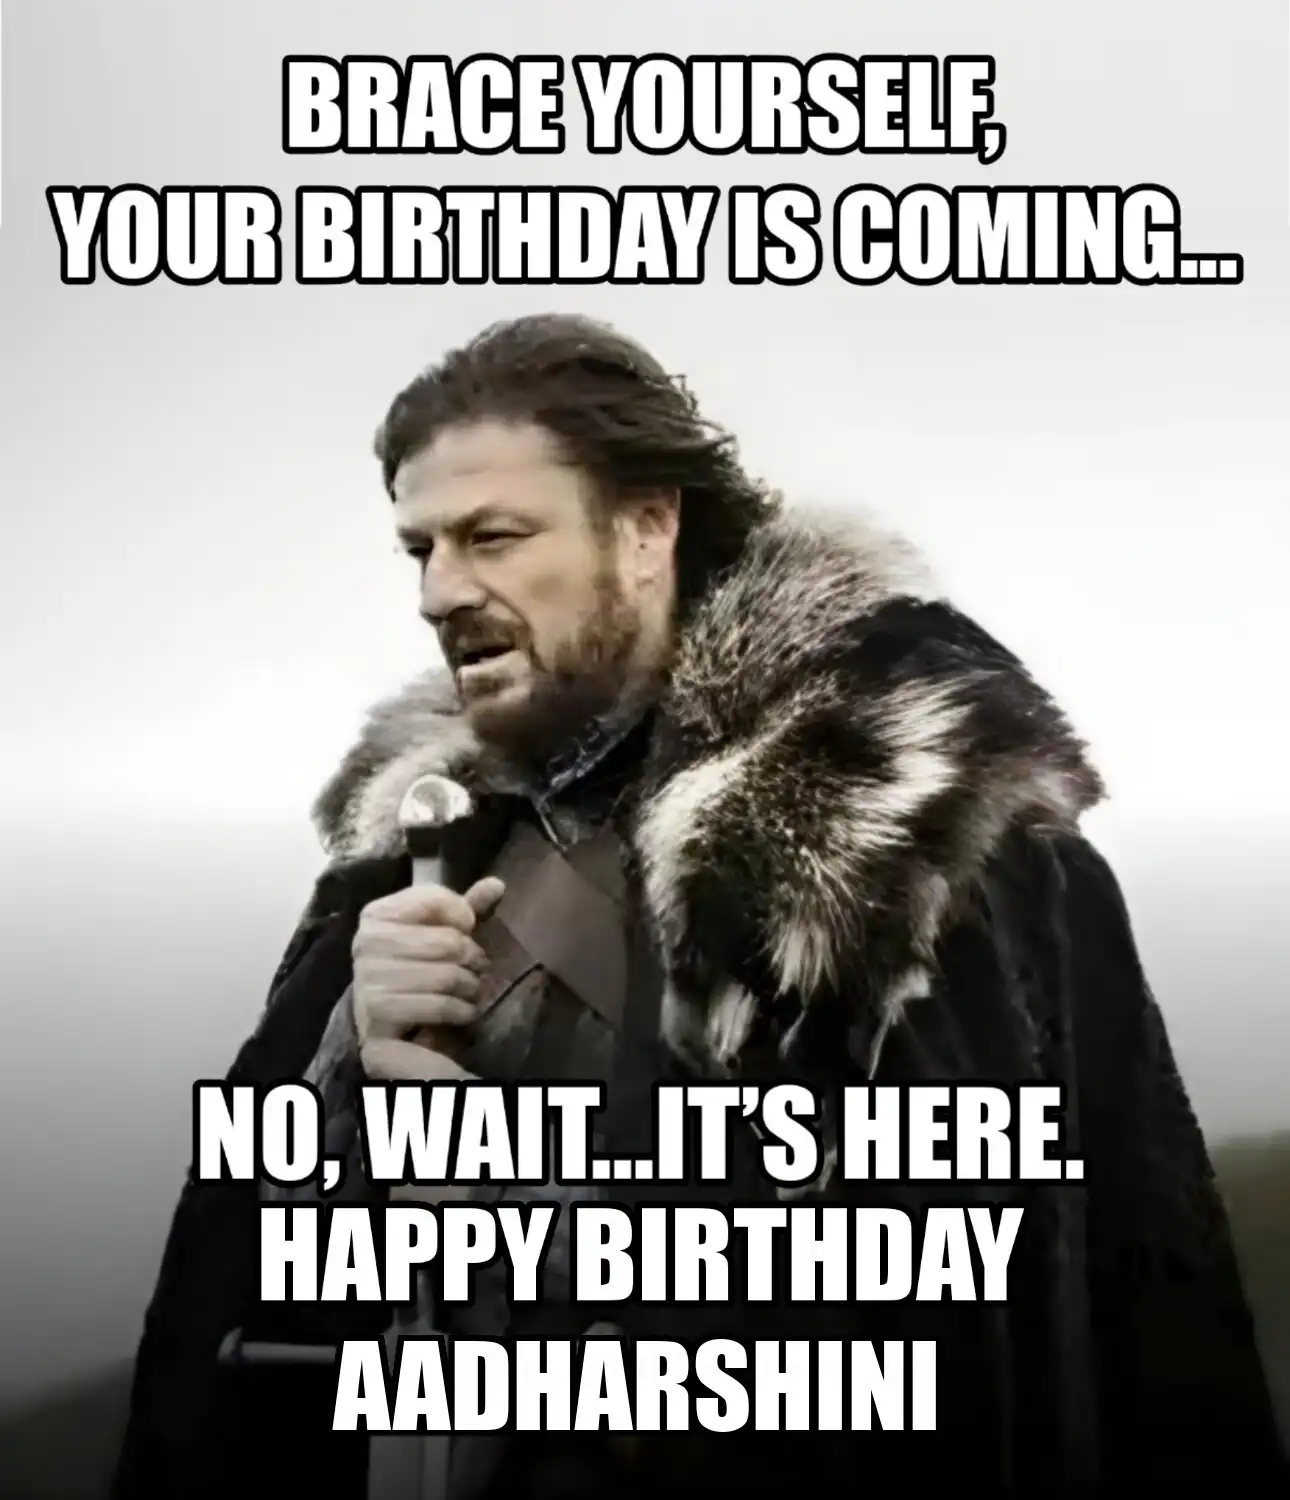 Happy Birthday Aadharshini Brace Yourself Your Birthday Is Coming Meme